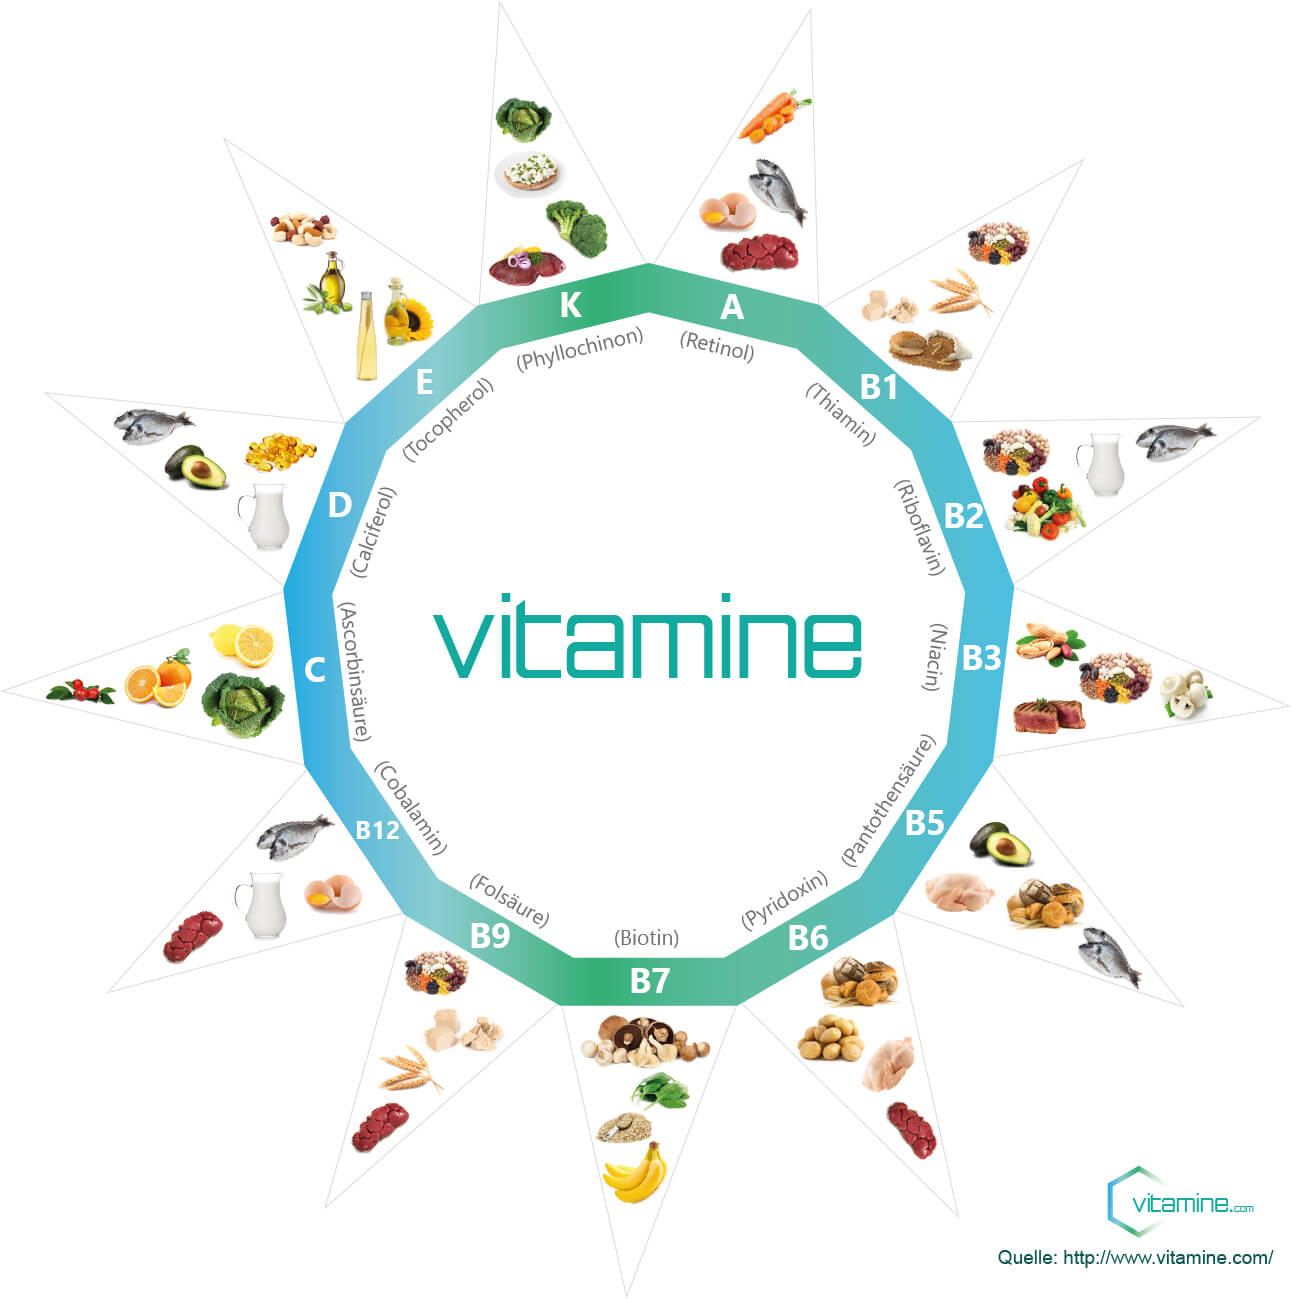 Vitamine.com